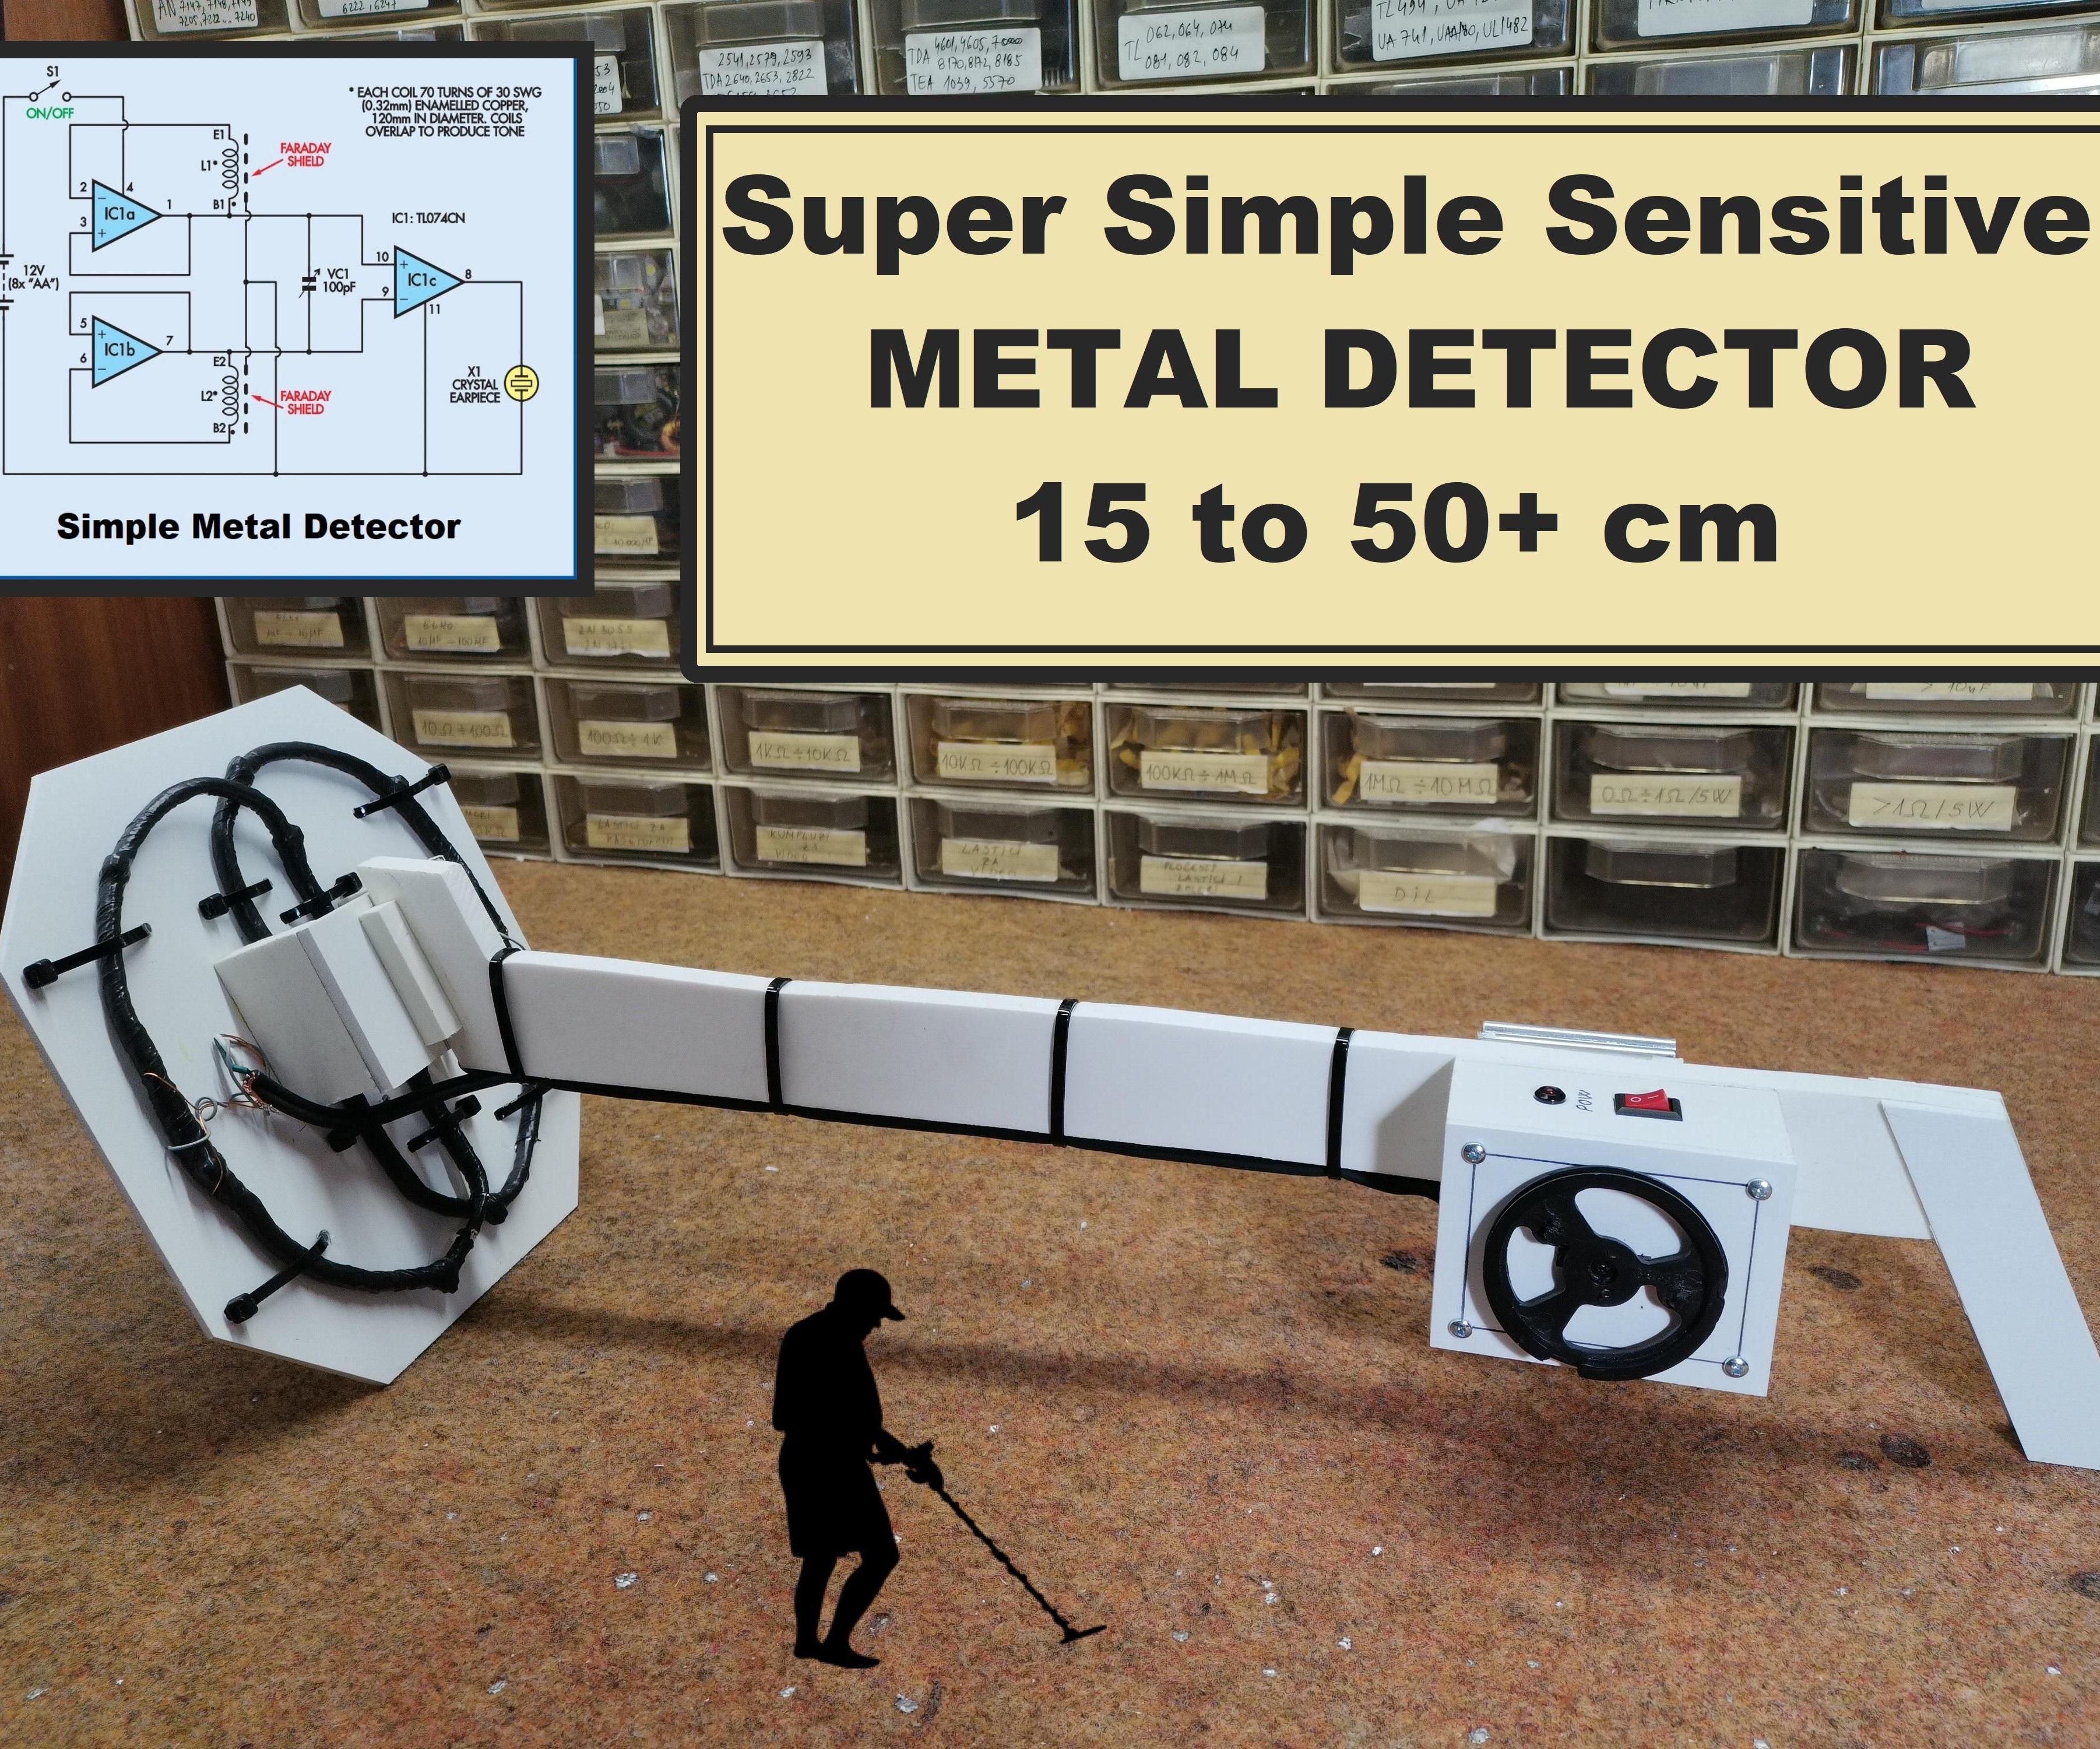 DIY Super Simple Sensitive Metal Detector